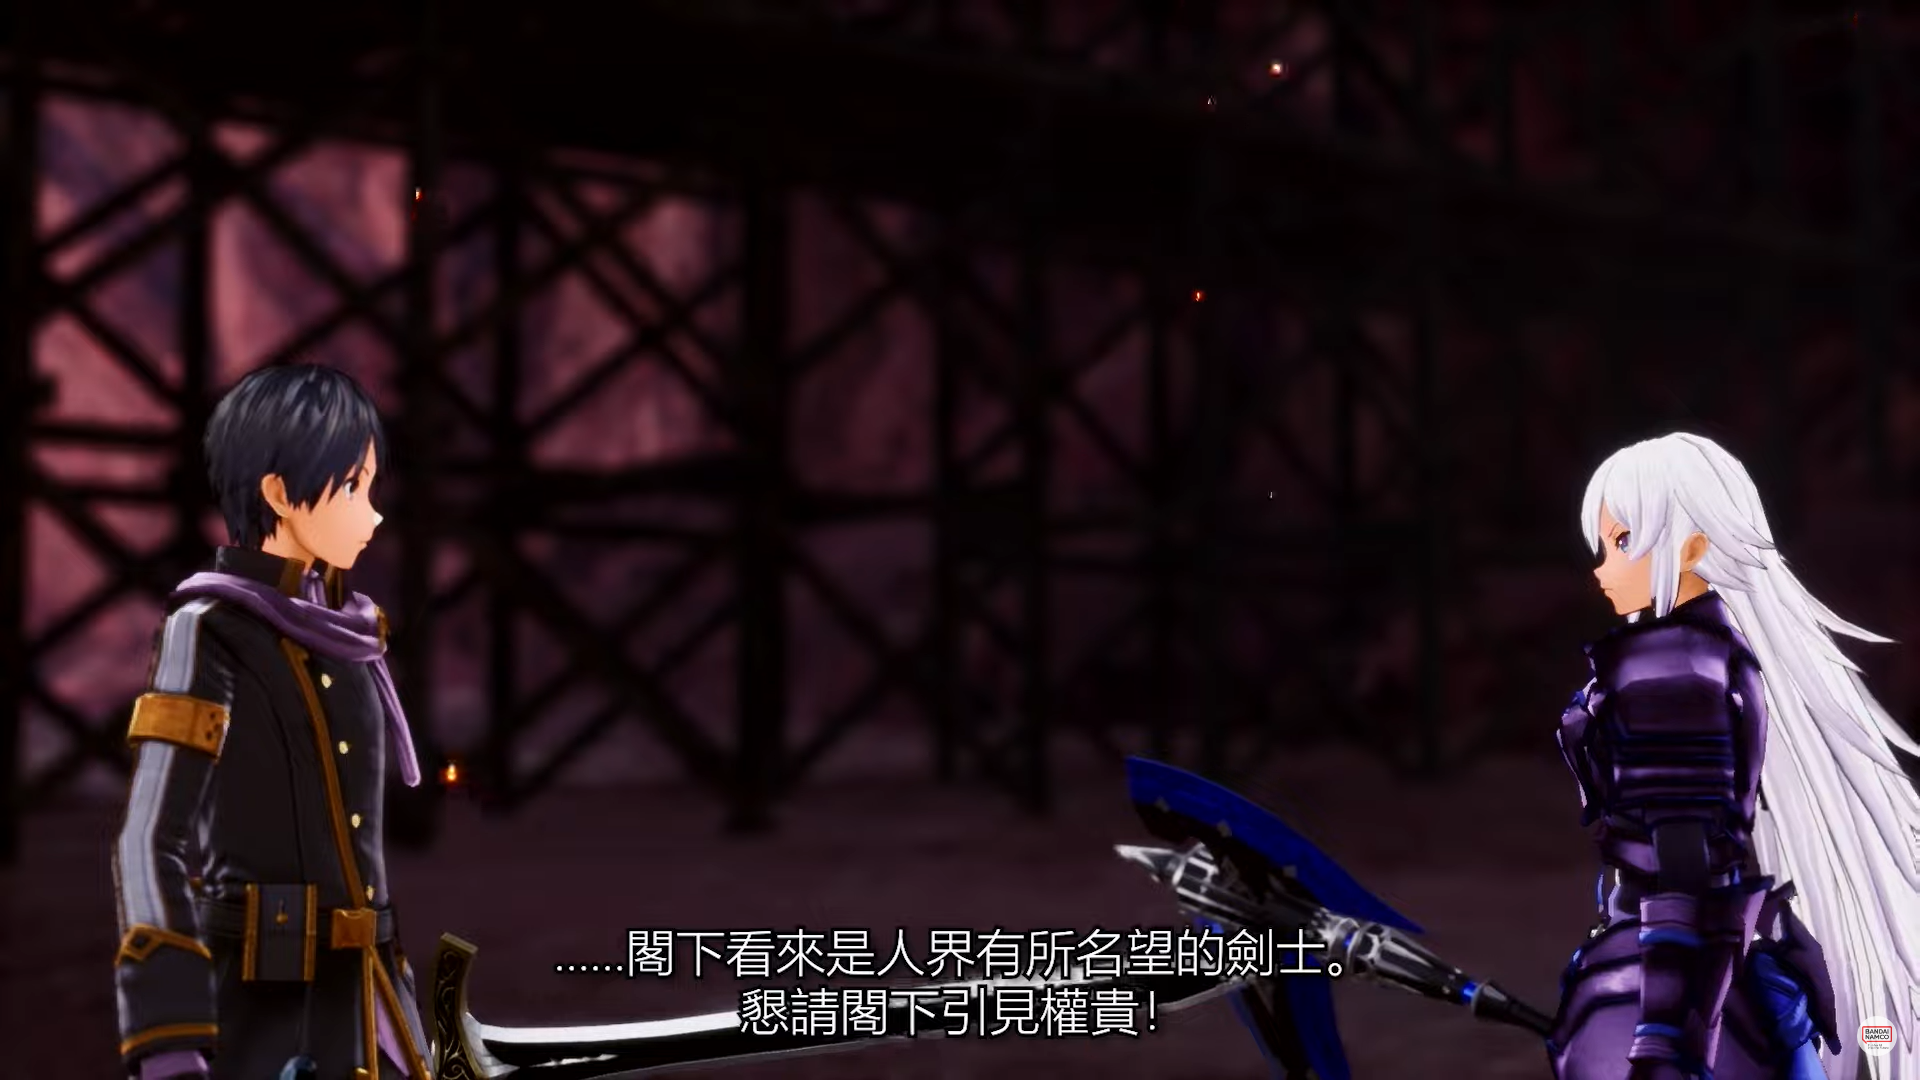 《刀剑神域 异绊集结》中文版系统介绍影片公布